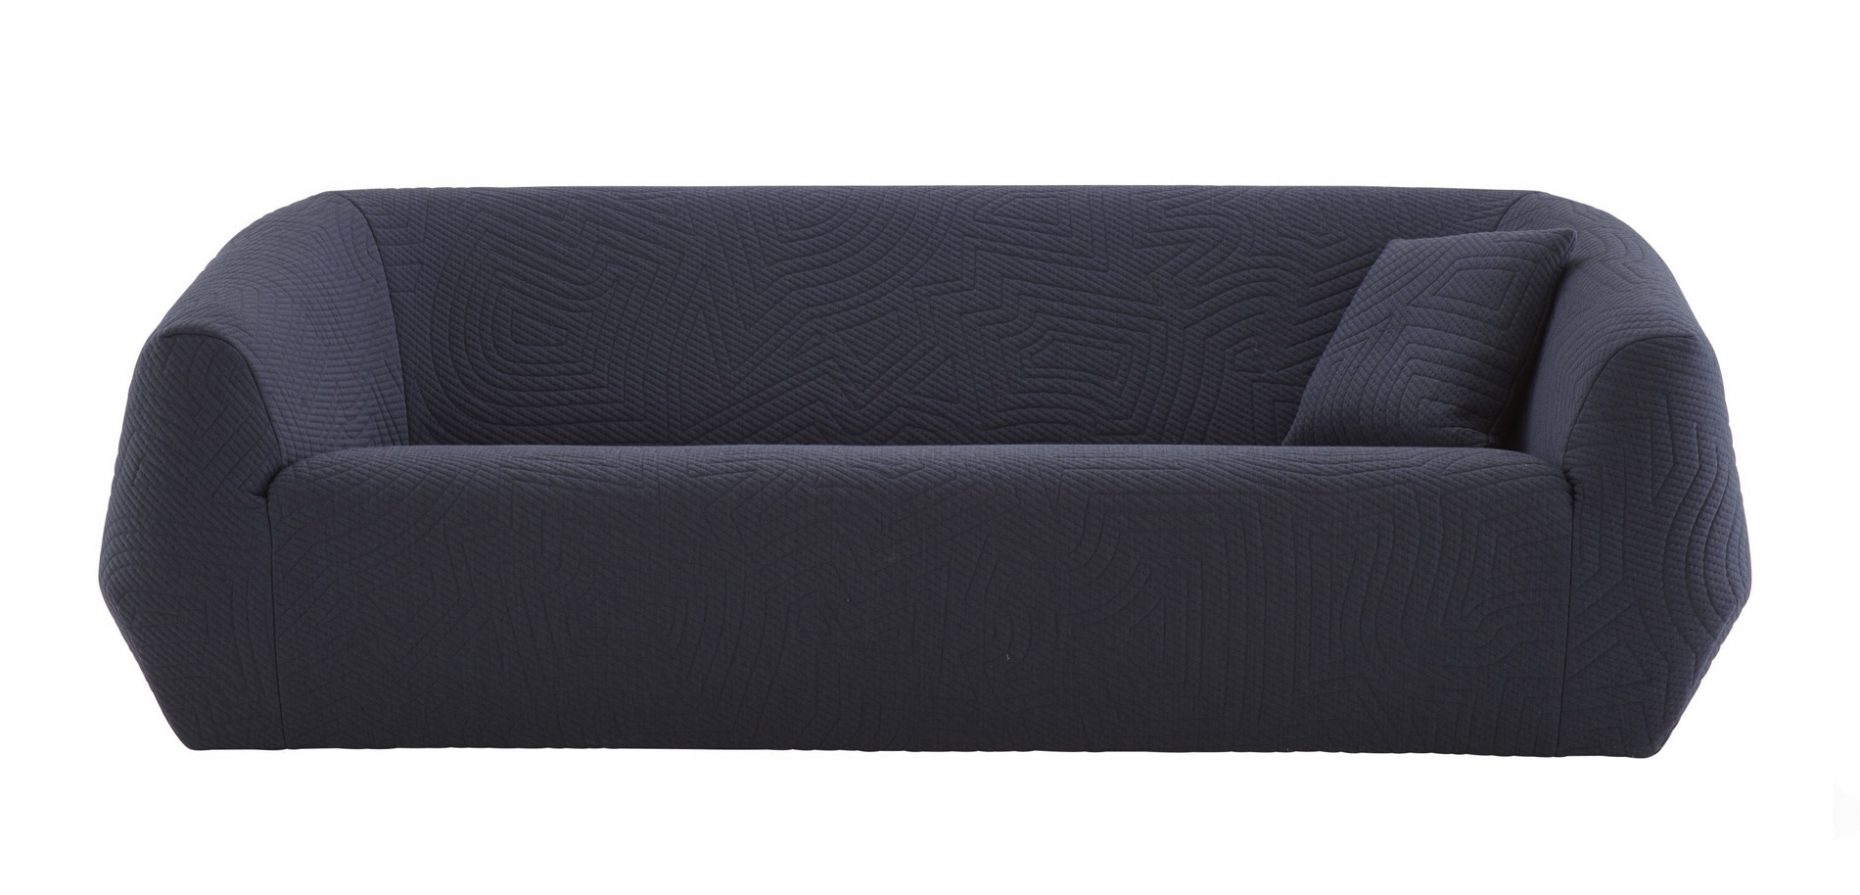 Wie ein Handschuh betont der hautenge Bezug die moderne und kompakte Form des neuen Sofas Uncover, das Marie Christine Dorner für Ligne Roset entworfen hat.